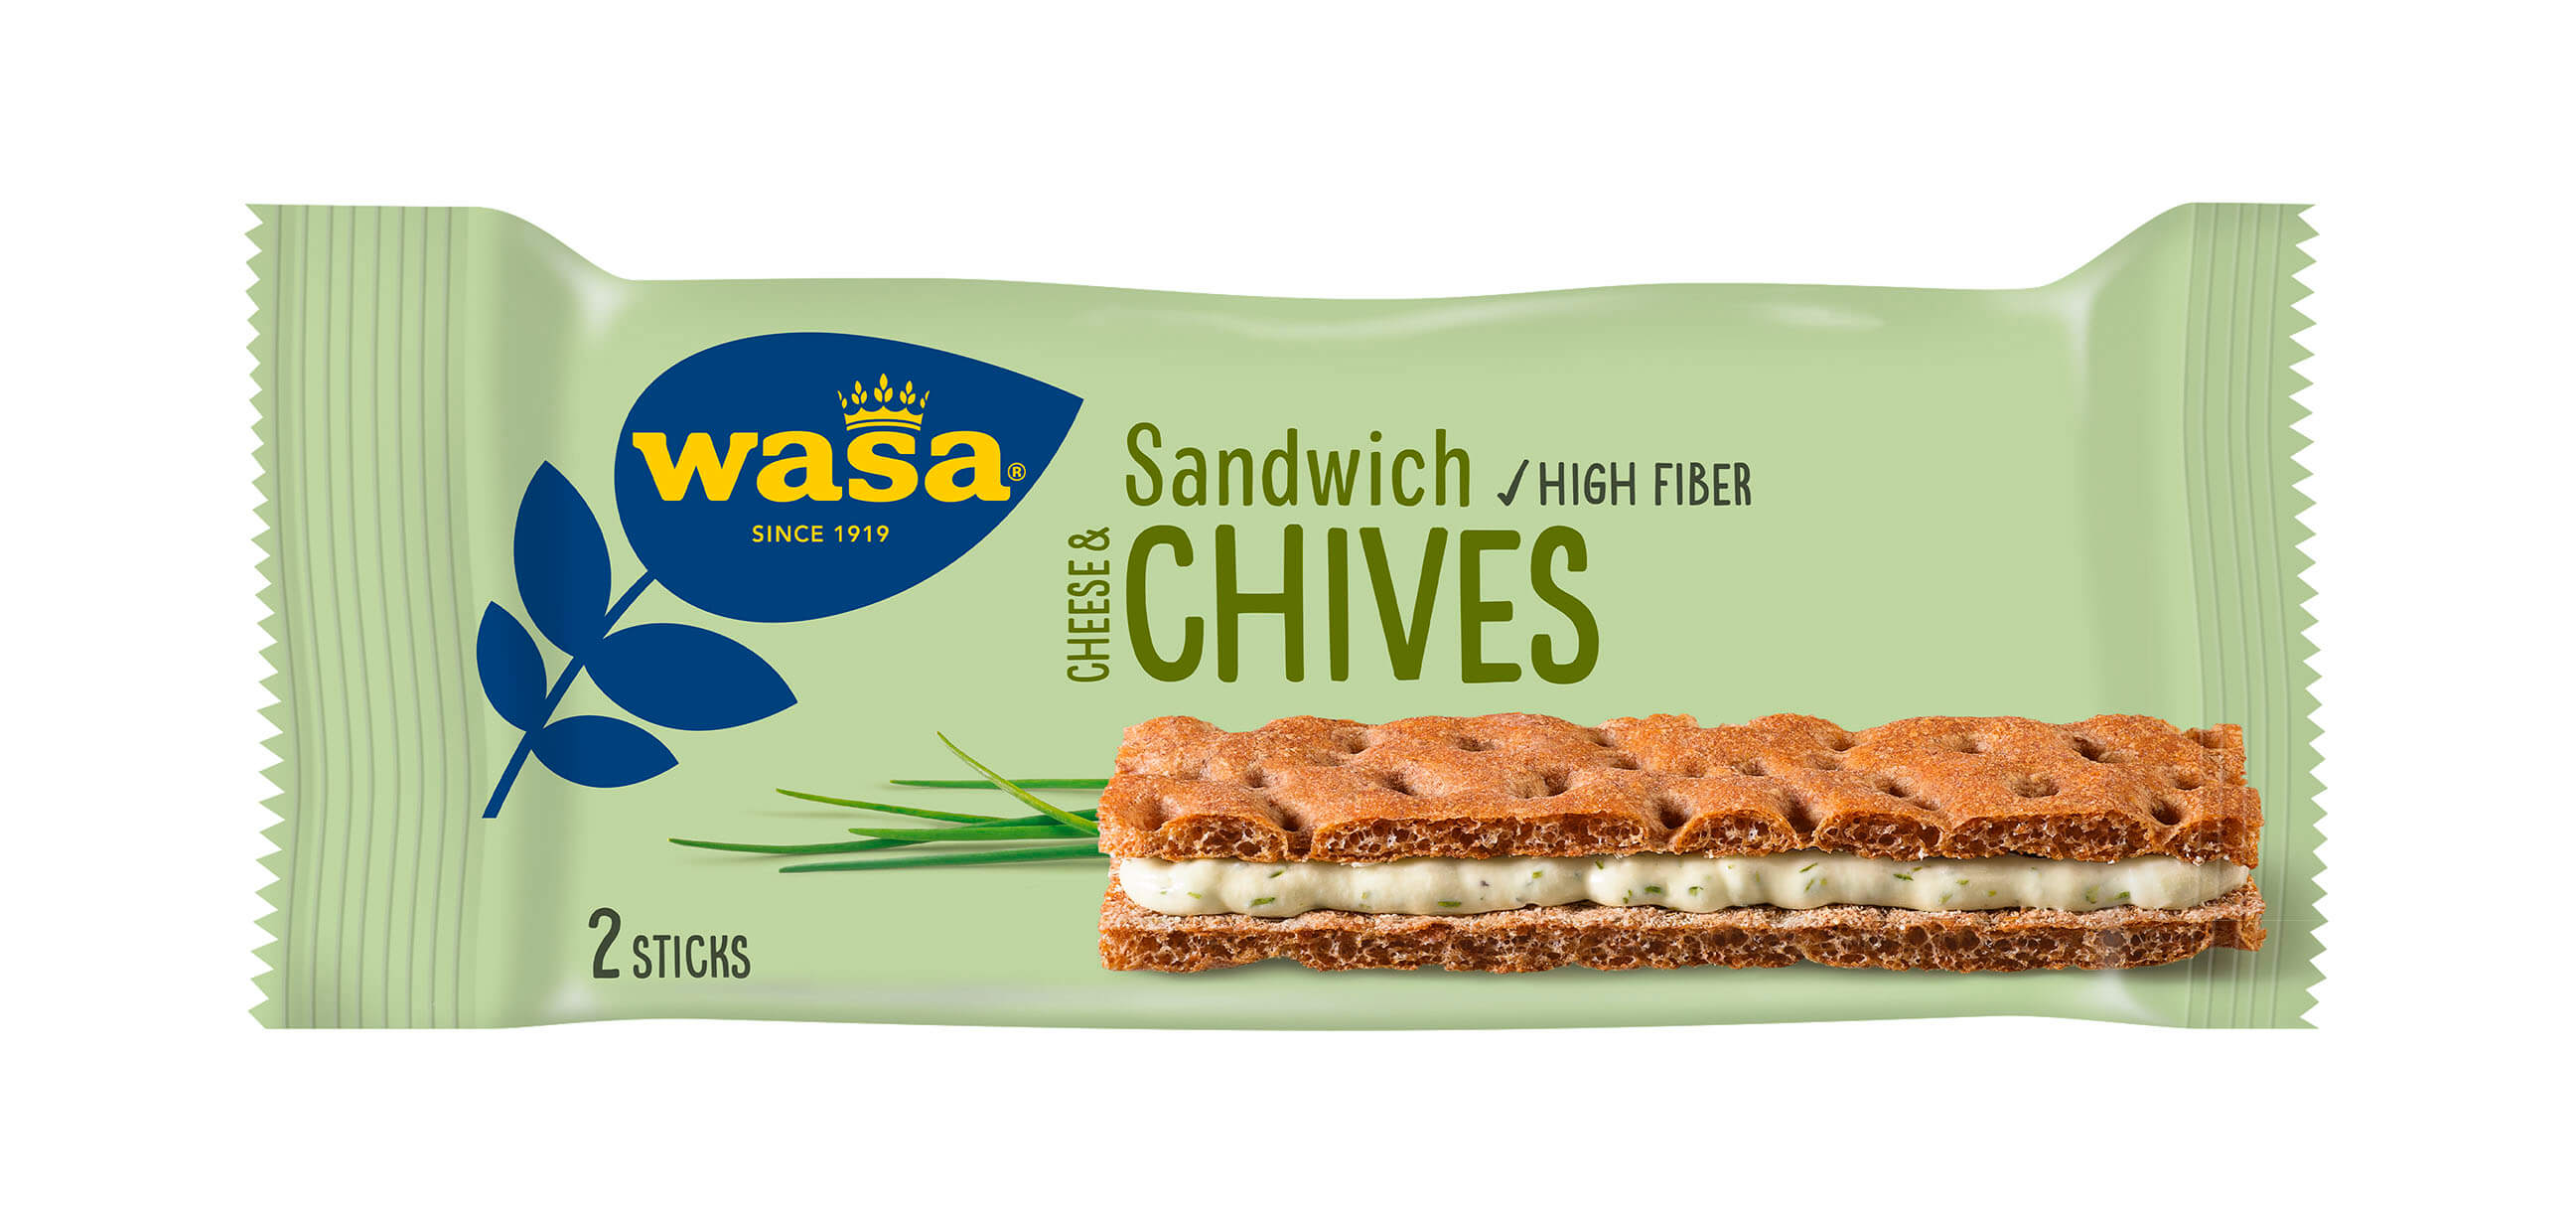 Wasa Sandwich Cheese & Chives - Upptäck ett veganskt mellanmål, gott knäckebröd med krämig fyllning. Utmärkt som mellanmål på språng och som bra mellanmål på jobbet, efter skolan eller innan träning.